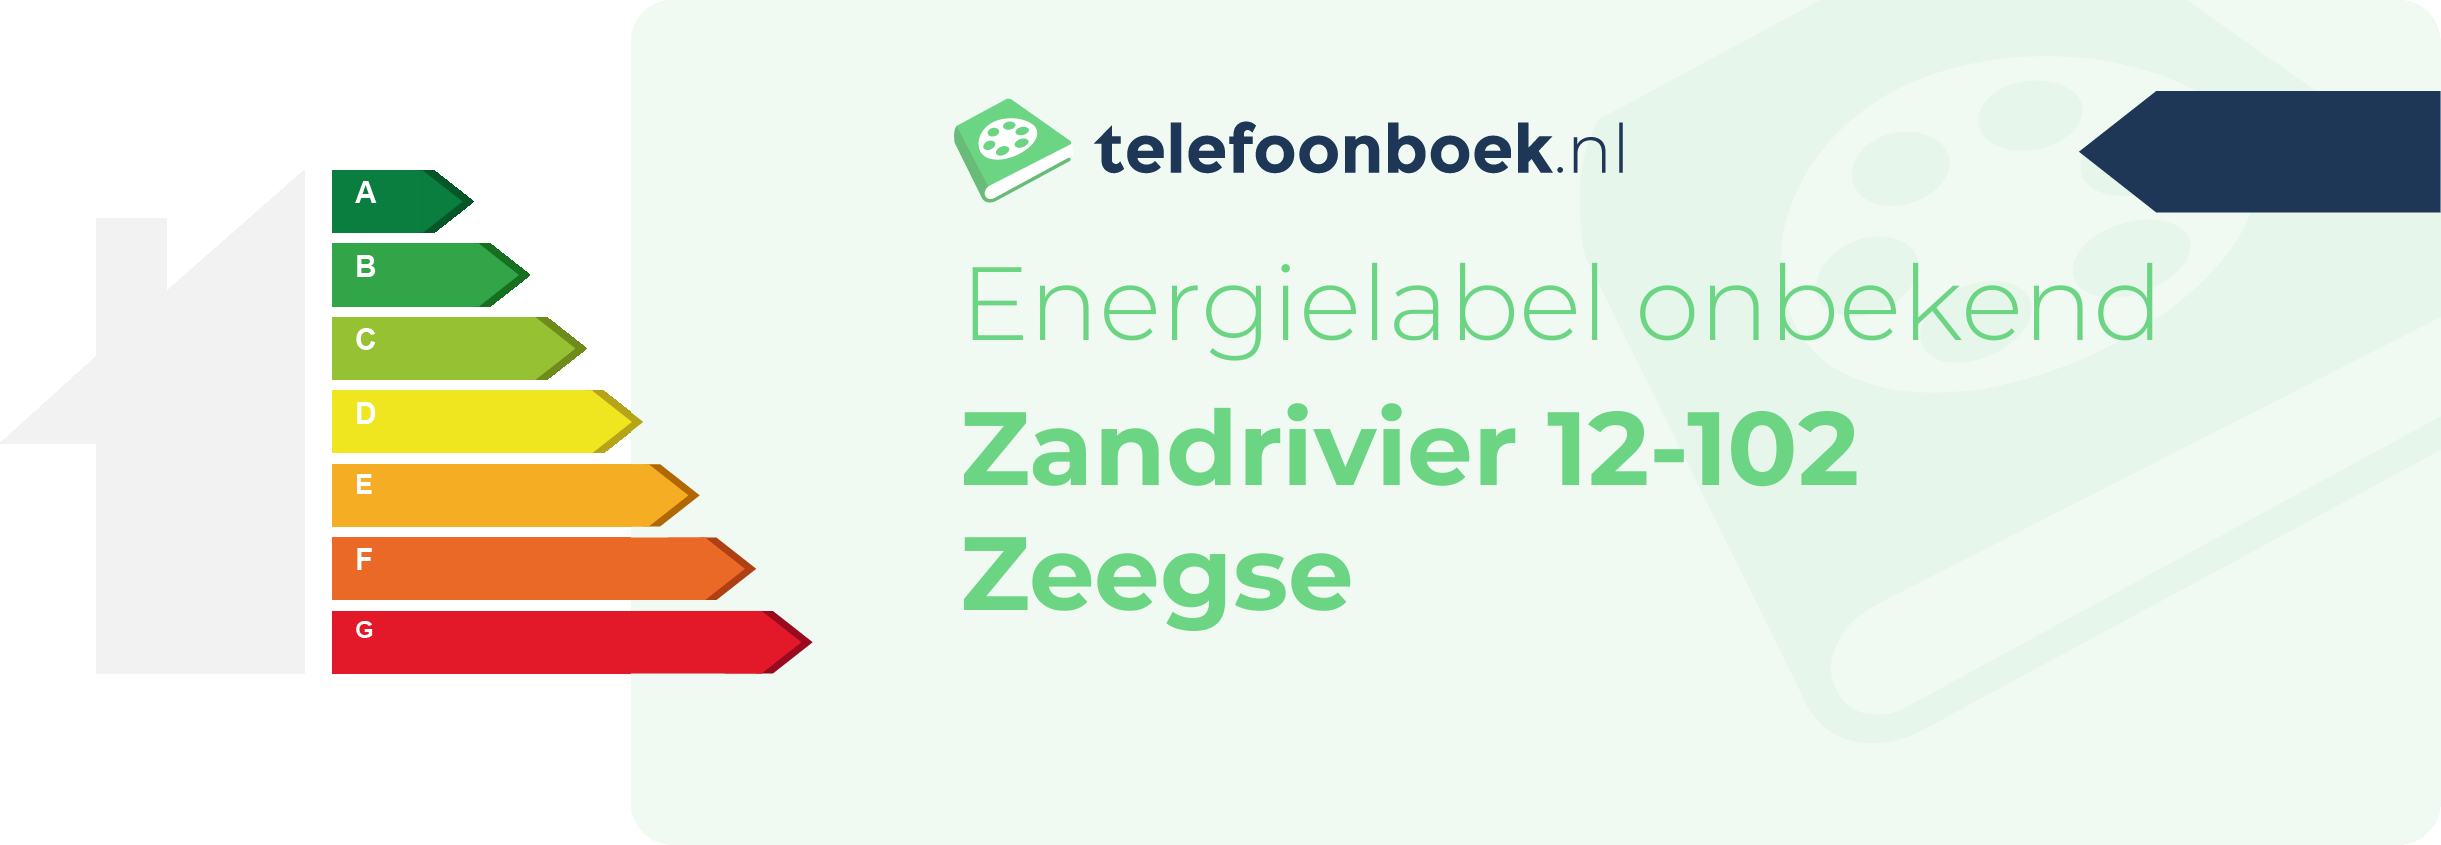 Energielabel Zandrivier 12-102 Zeegse